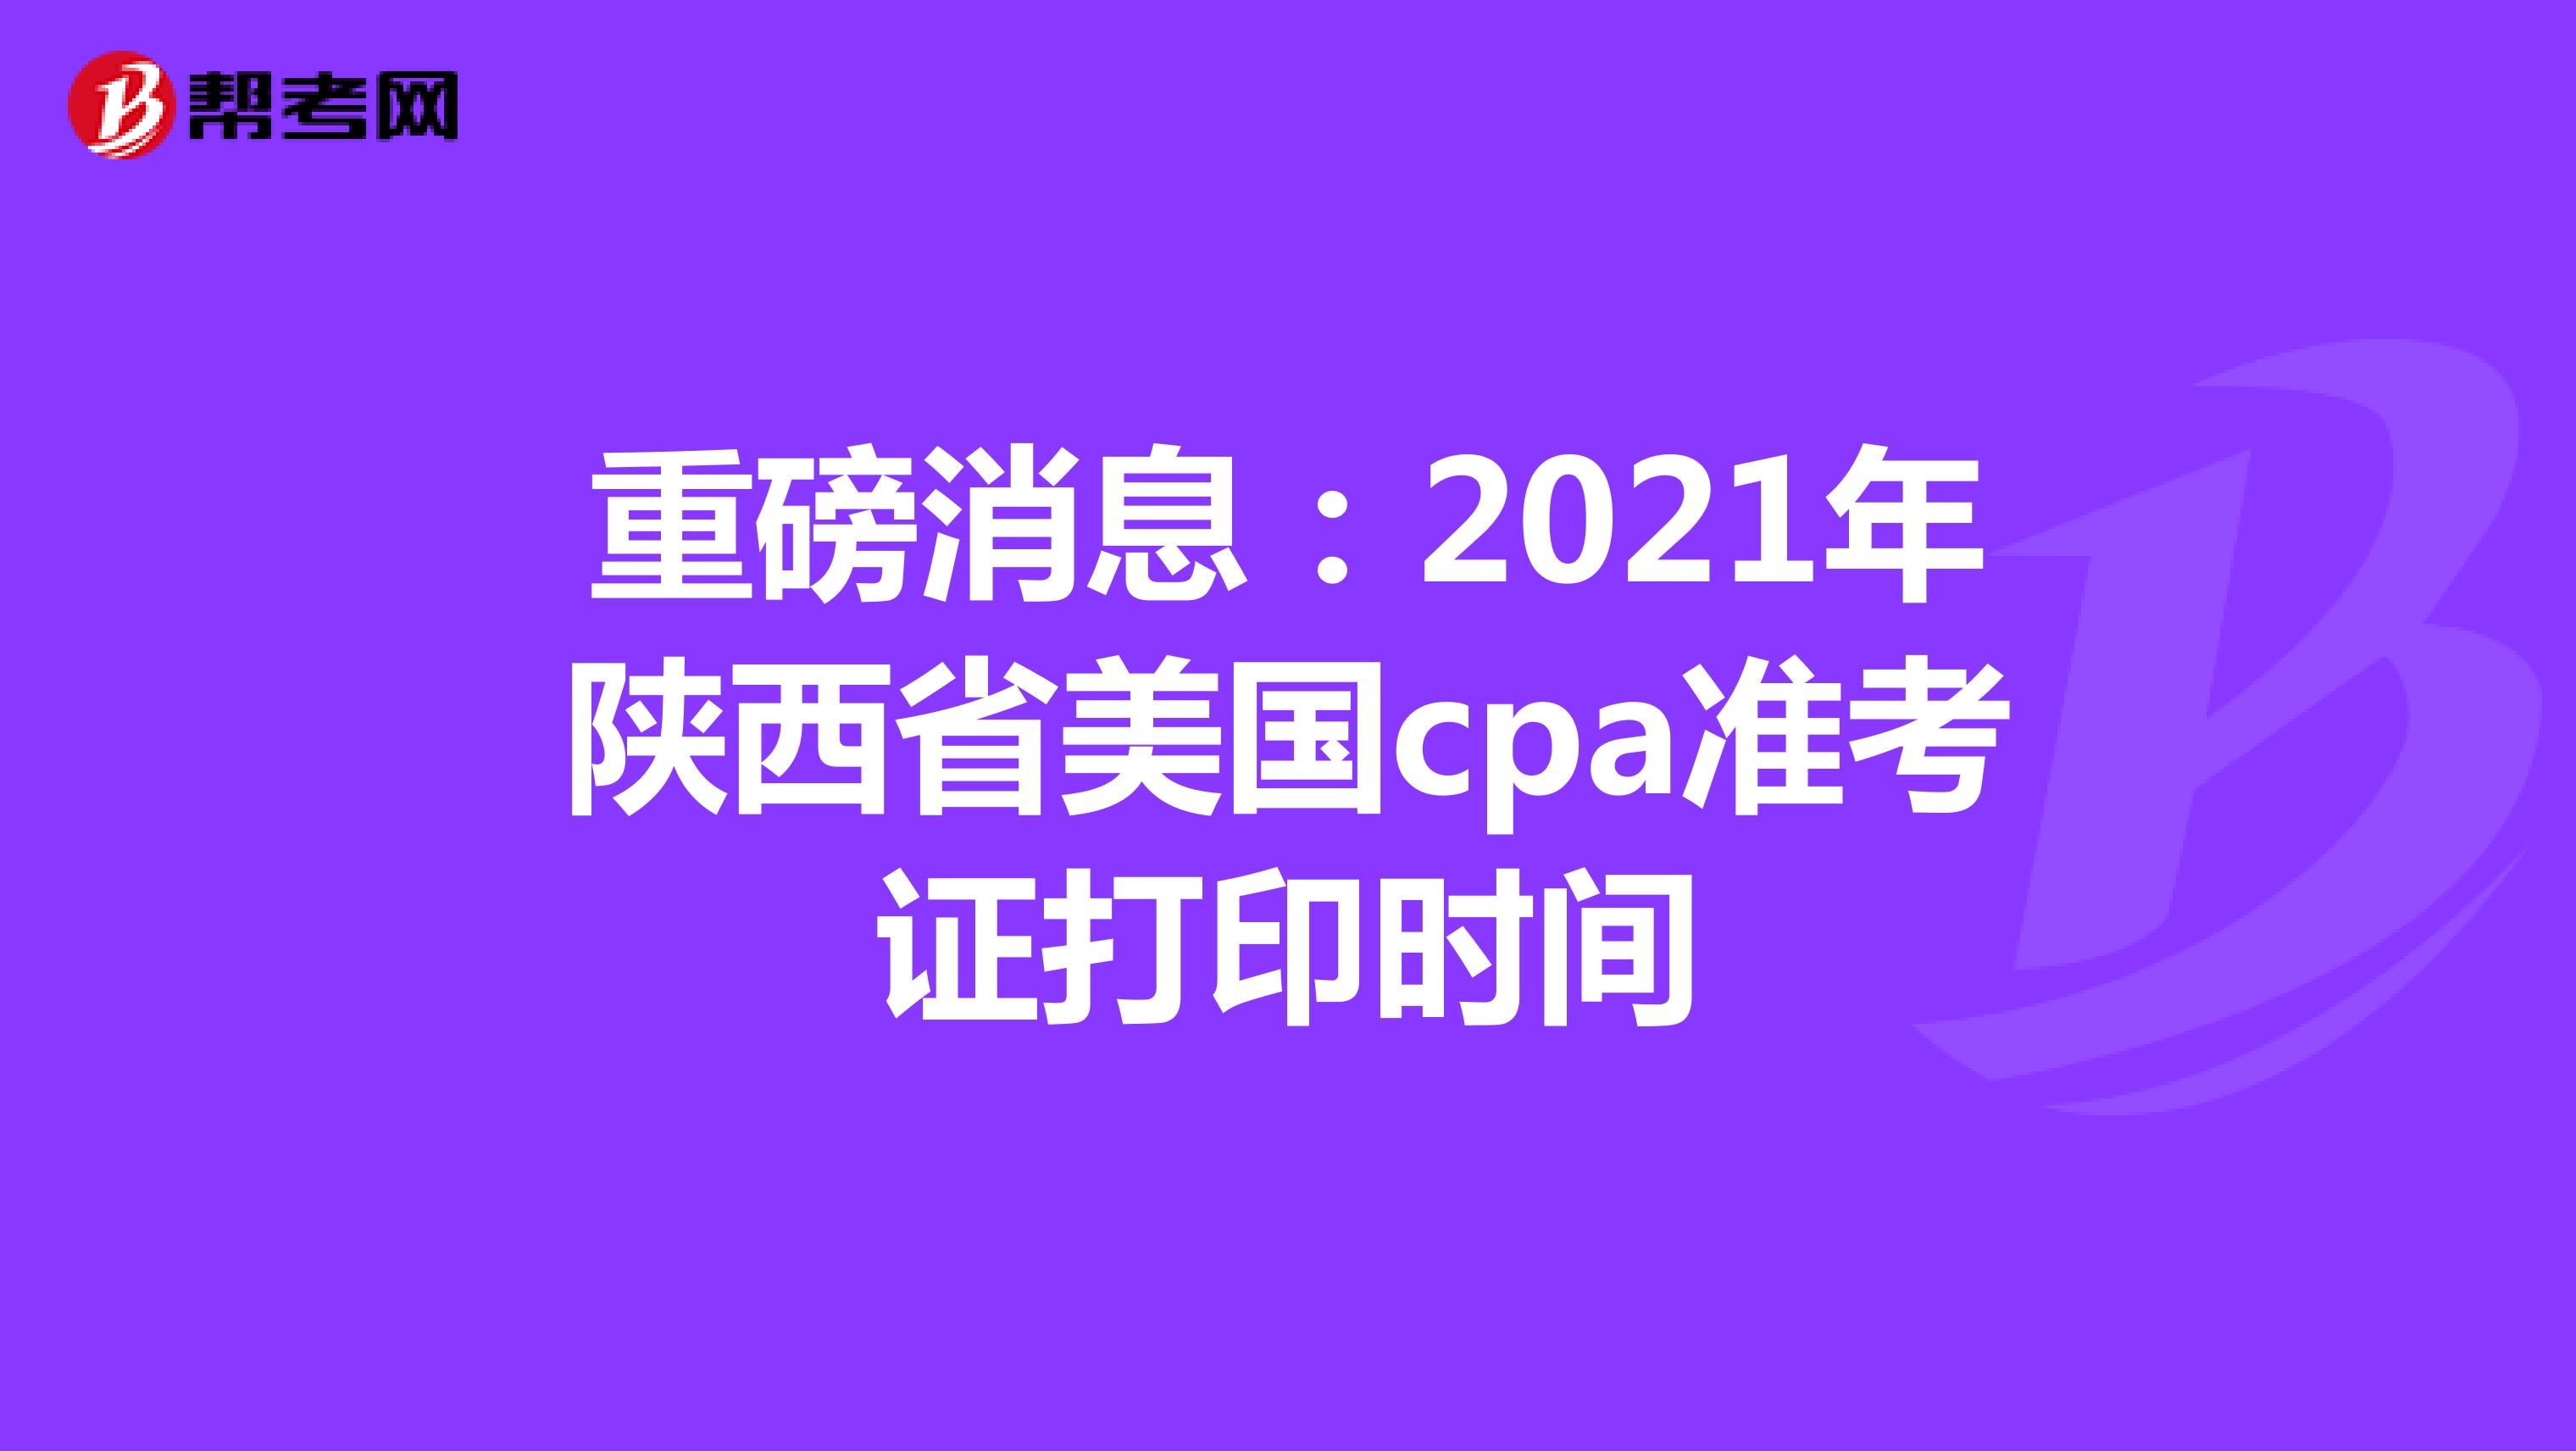 重磅消息：2021年陕西省美国cpa准考证打印时间